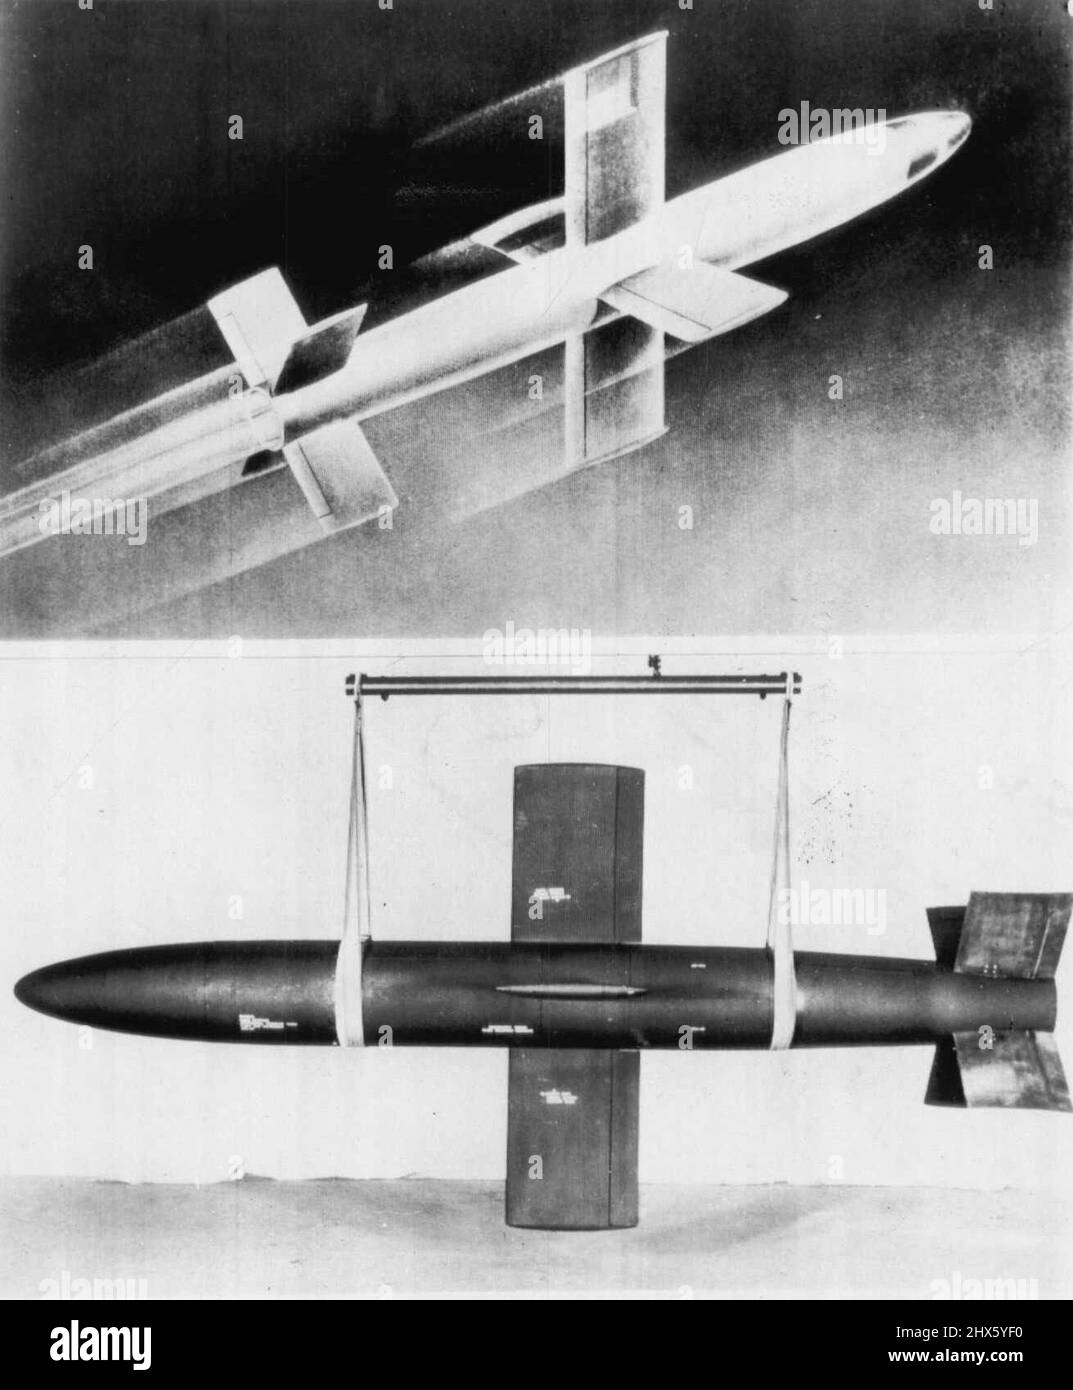 Navy enthüllt Raketengetriebene Rakete -- die Navy stellte eine ihrer neuesten Lenkraketen vor, mit der Veröffentlichung dieser Bilder der Fairchild Lark, einer raketengetriebenen Schiff-Luft-Lenkrakete, die offiziell als XSAM-N-2 gelistet ist. Ganz oben steht die Vorstellung eines Künstlers von der Lark in Flight. Unten wird die Lark für die Lieferung in der Fabrik in Farmingdale, N.Y., vorbereitet.die Rakete wurde im Naval Air Missile Test Center, Point Mugu, Kalifornien, getestet, aber die Bauvorschriften und die Durchfüberstellung wurden geprüft Stockfoto